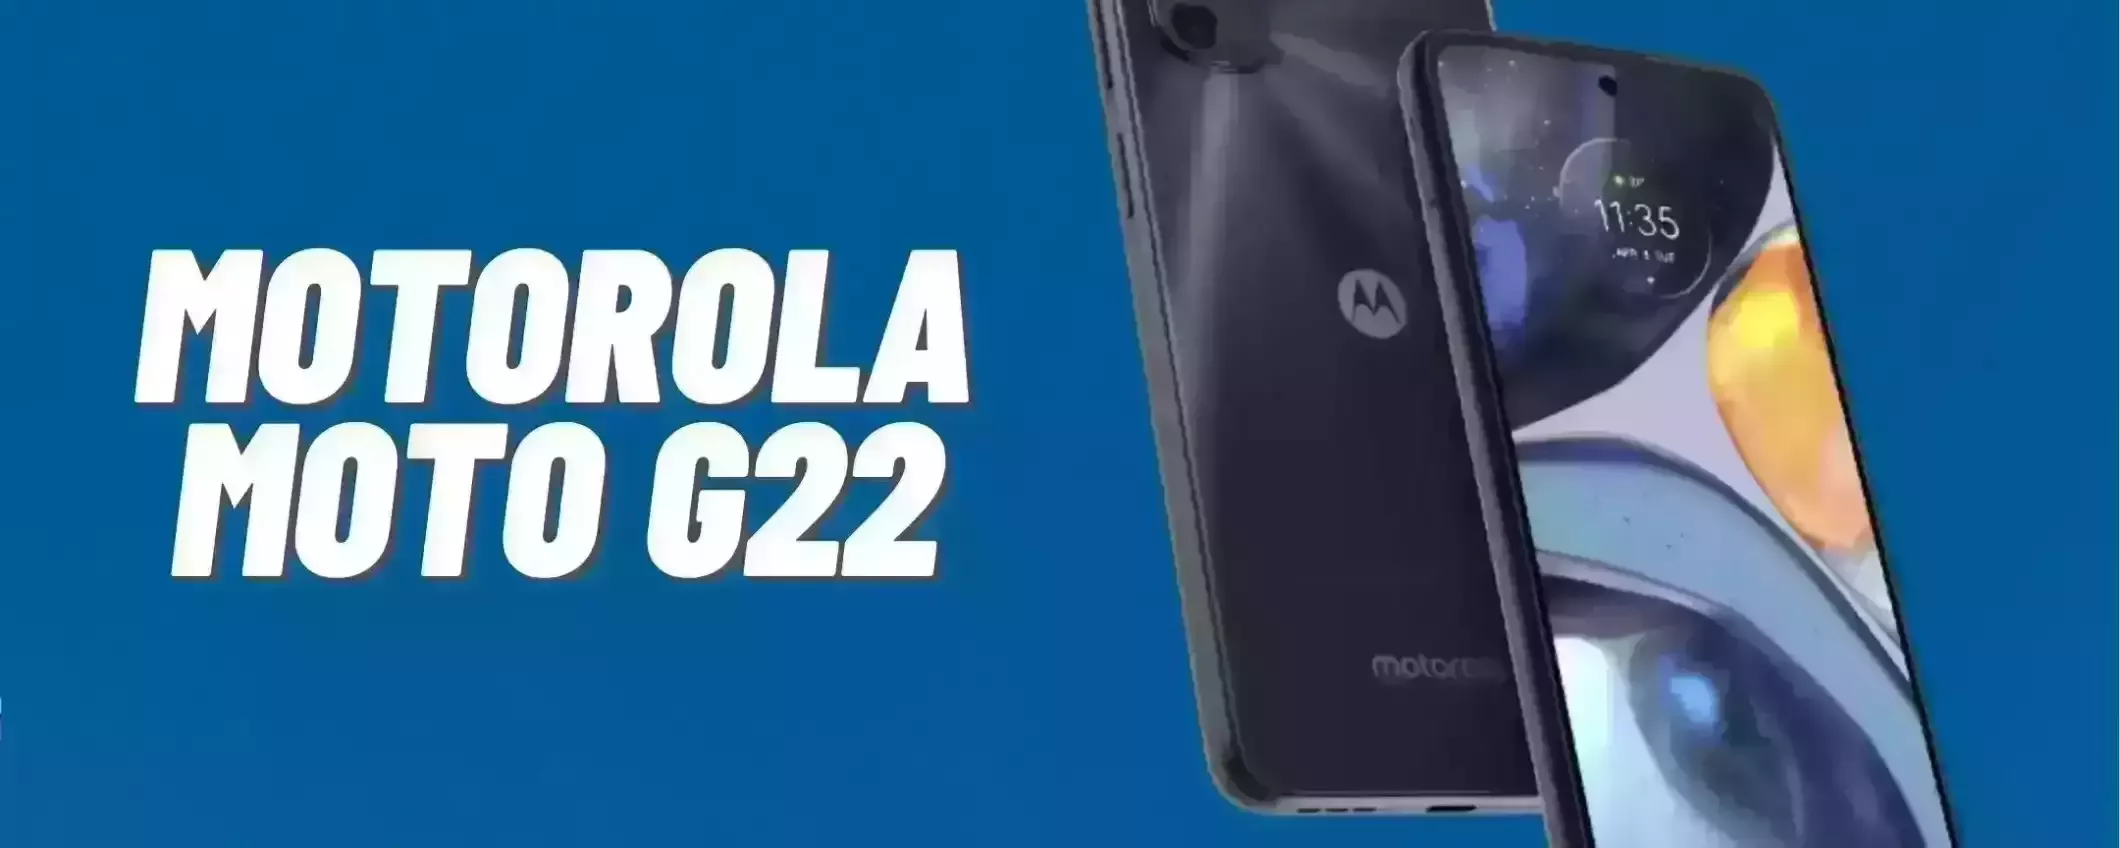 Motorola Moto G22: sconto FOLLE del 35% su Amazon per poche ore